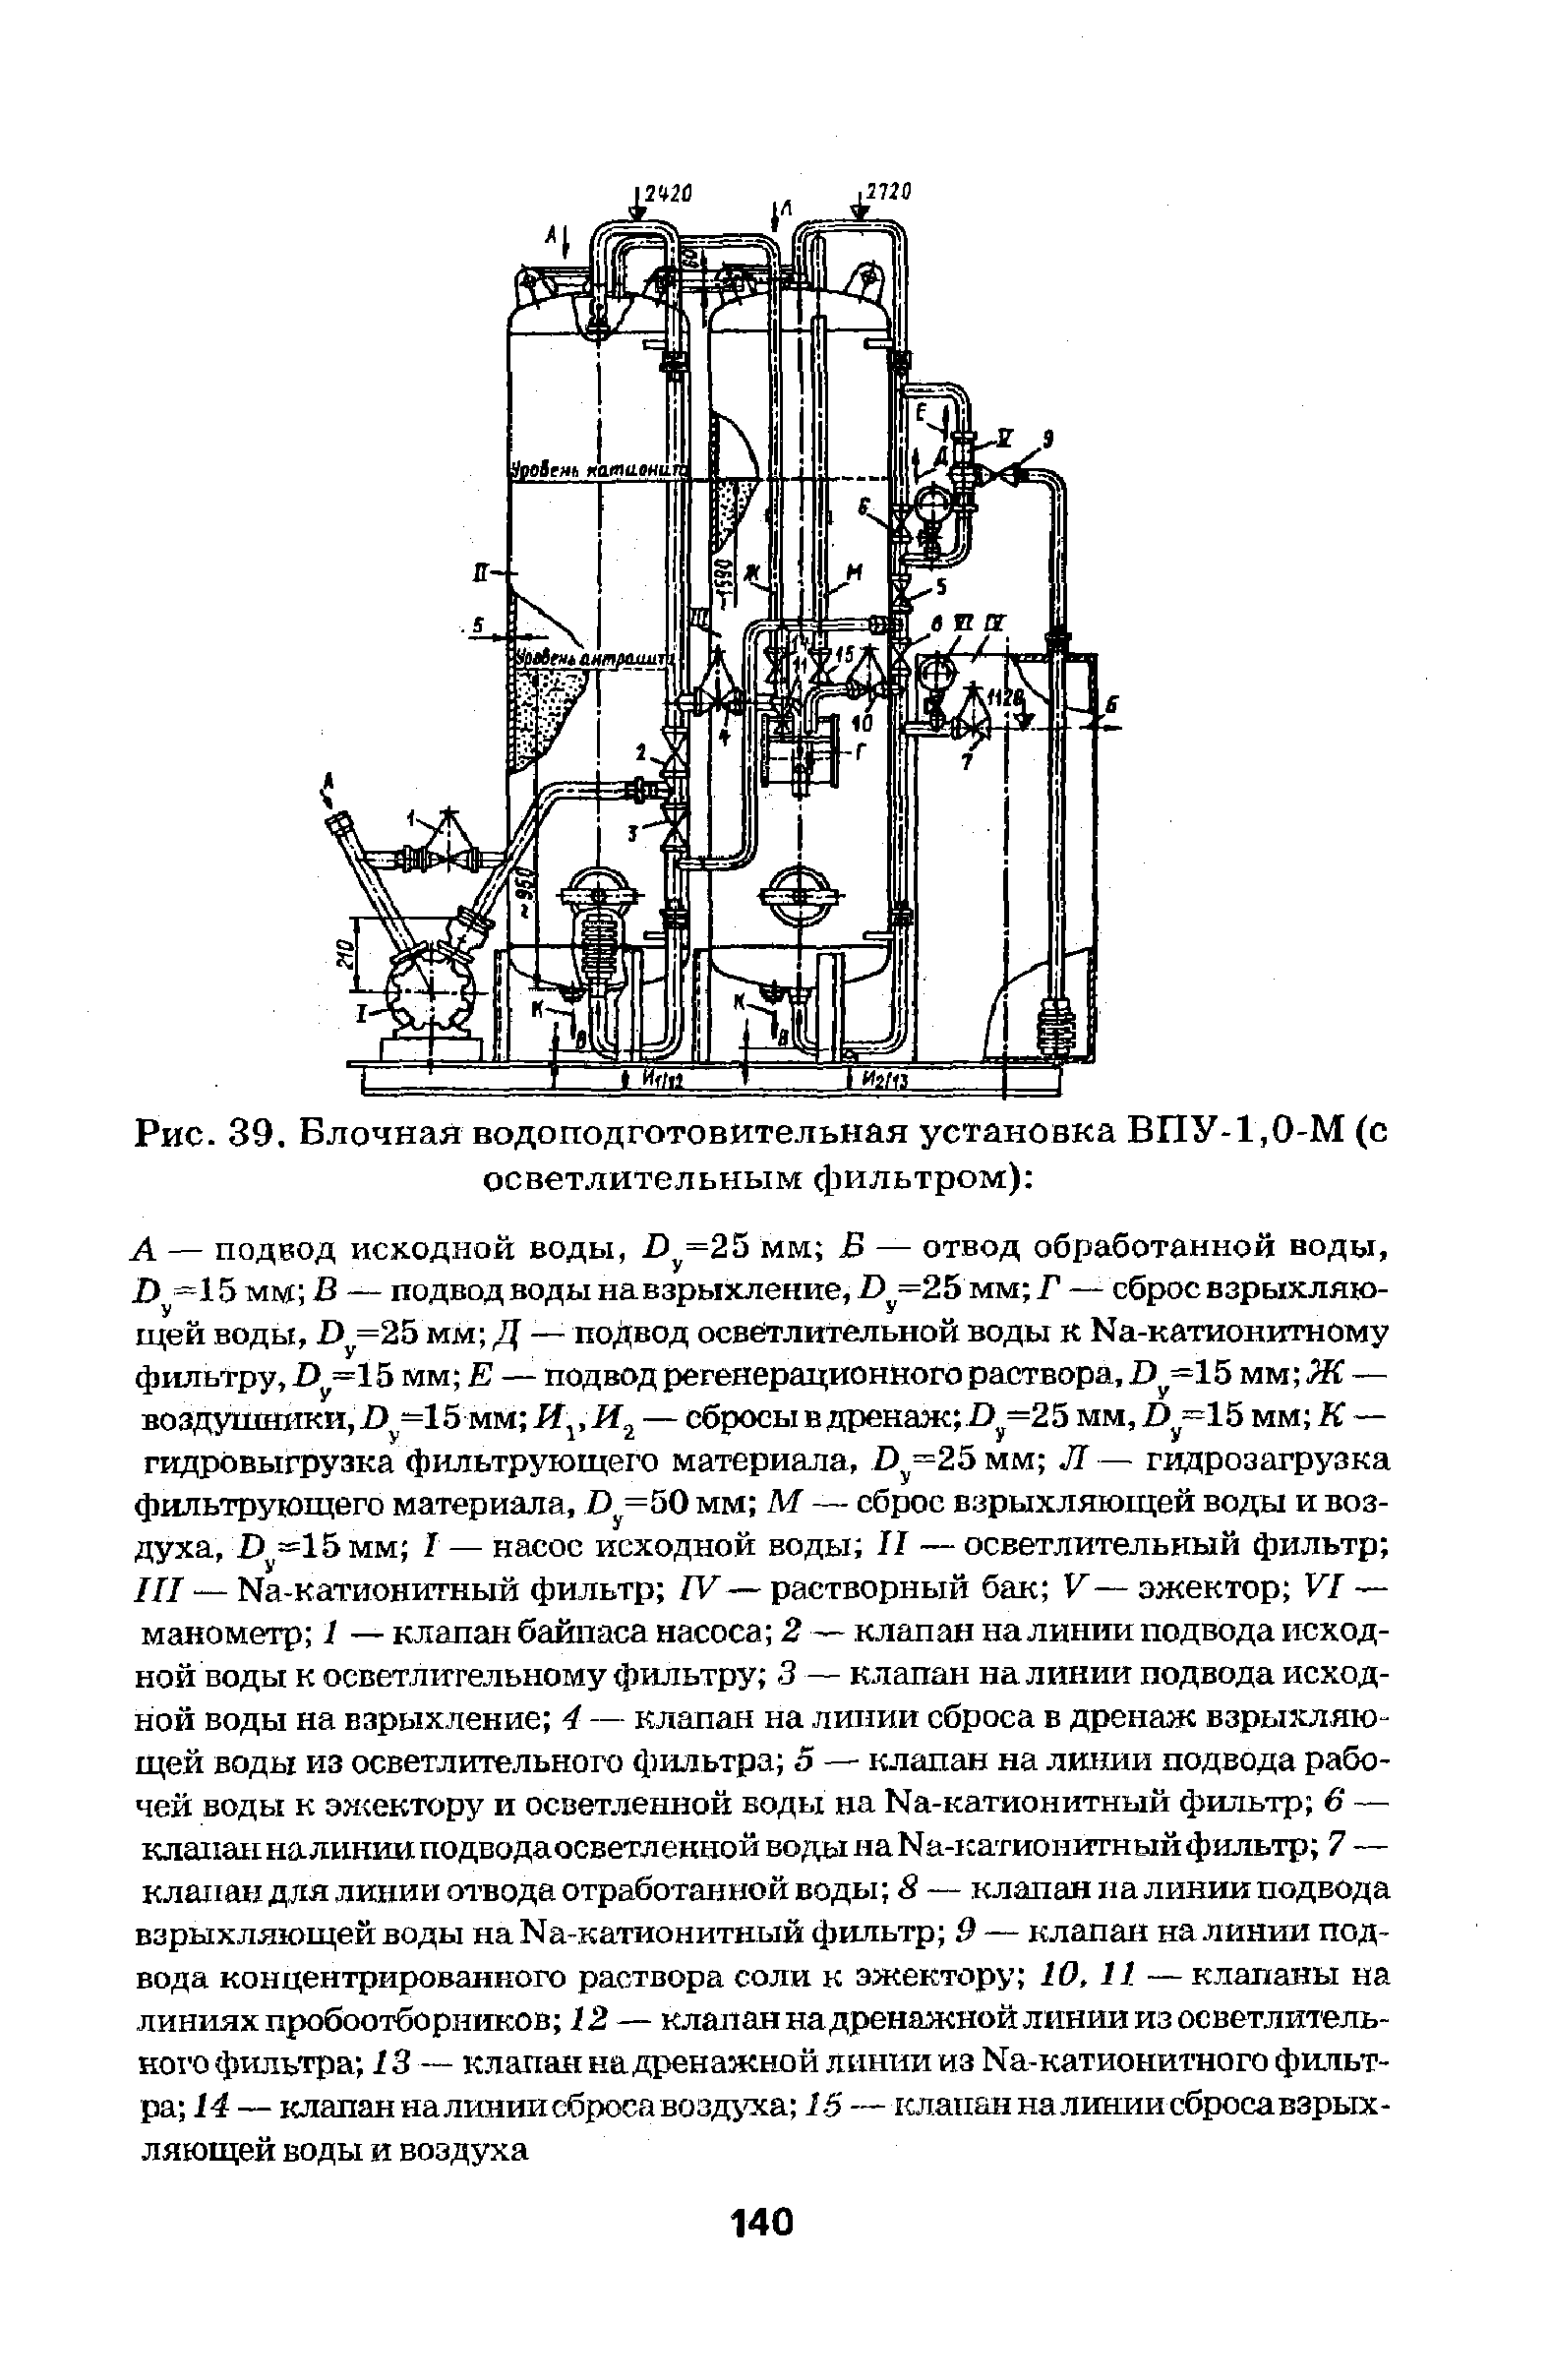 Рис. 39. Блочная водоподготовительная установка ВПУ-1,0-М (с осветлительным фильтром) 
